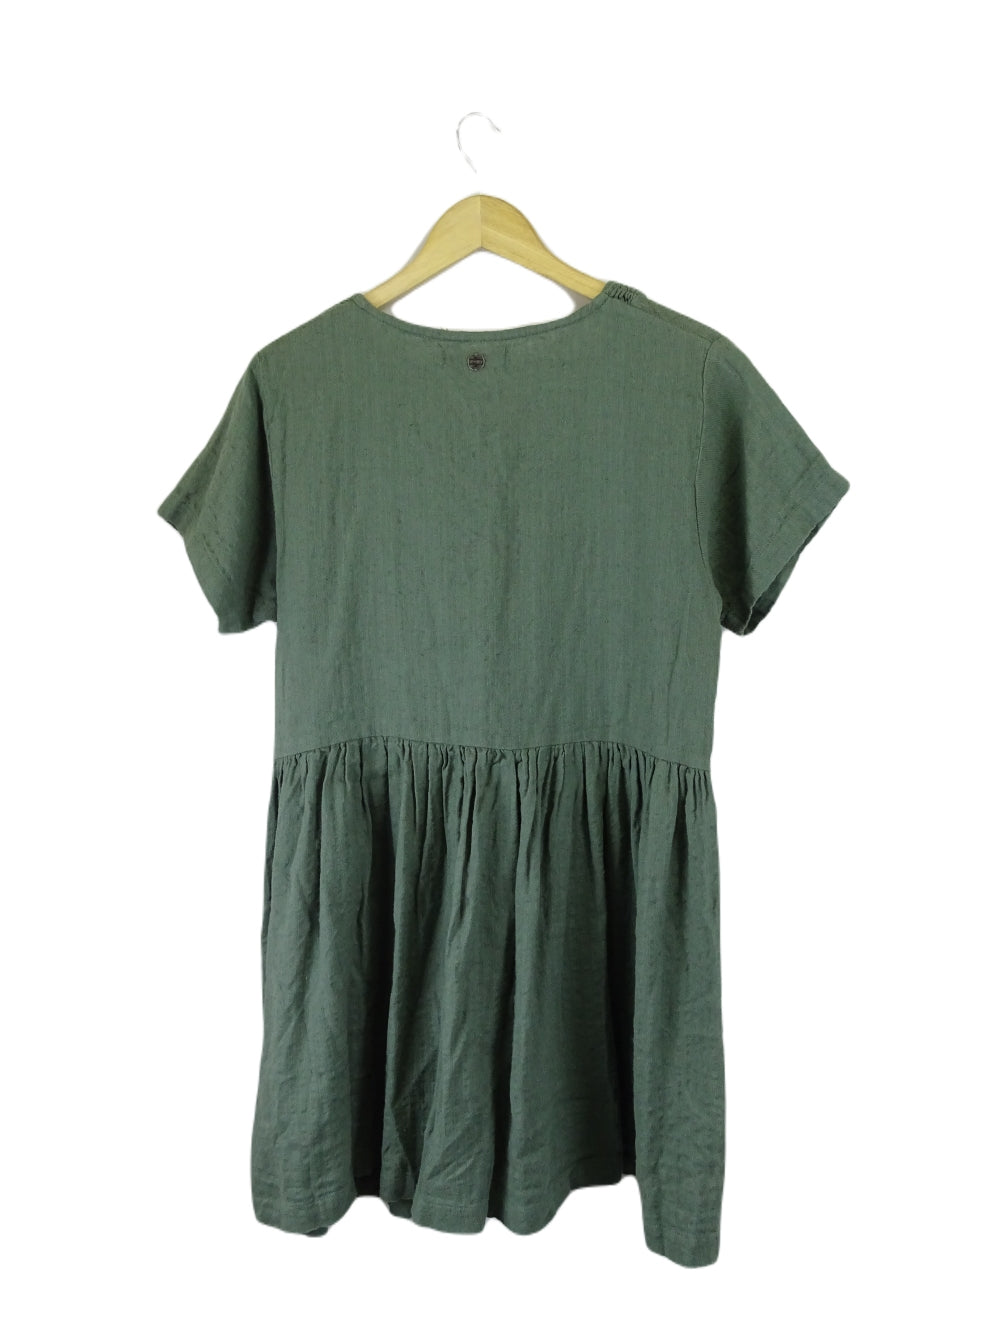 Ripcurl Green Dress L